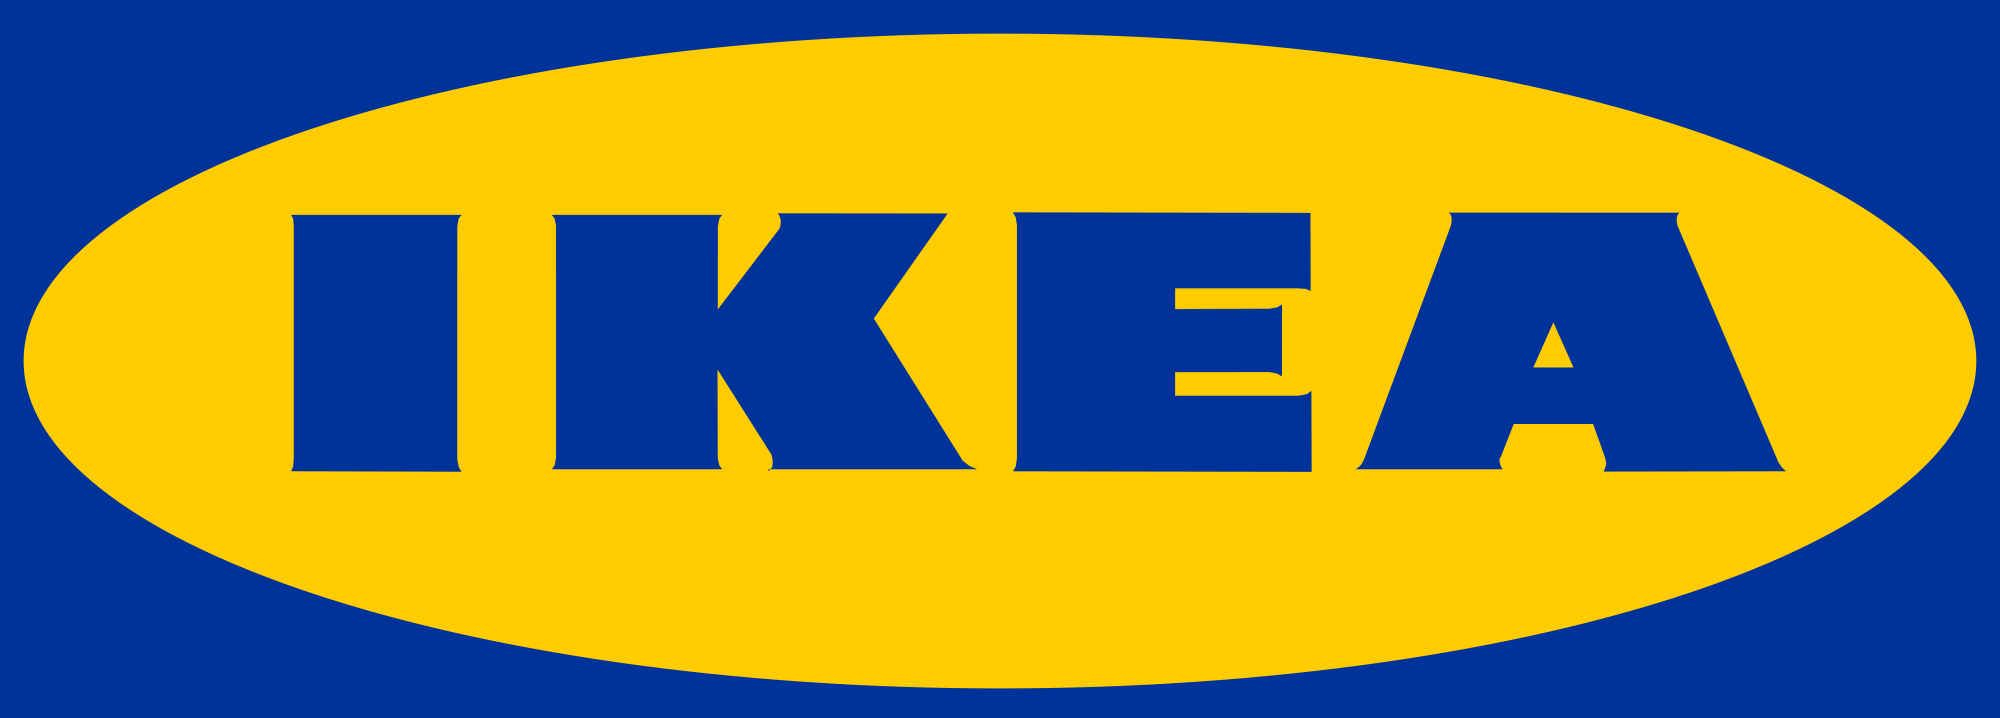 13. IKEA Group